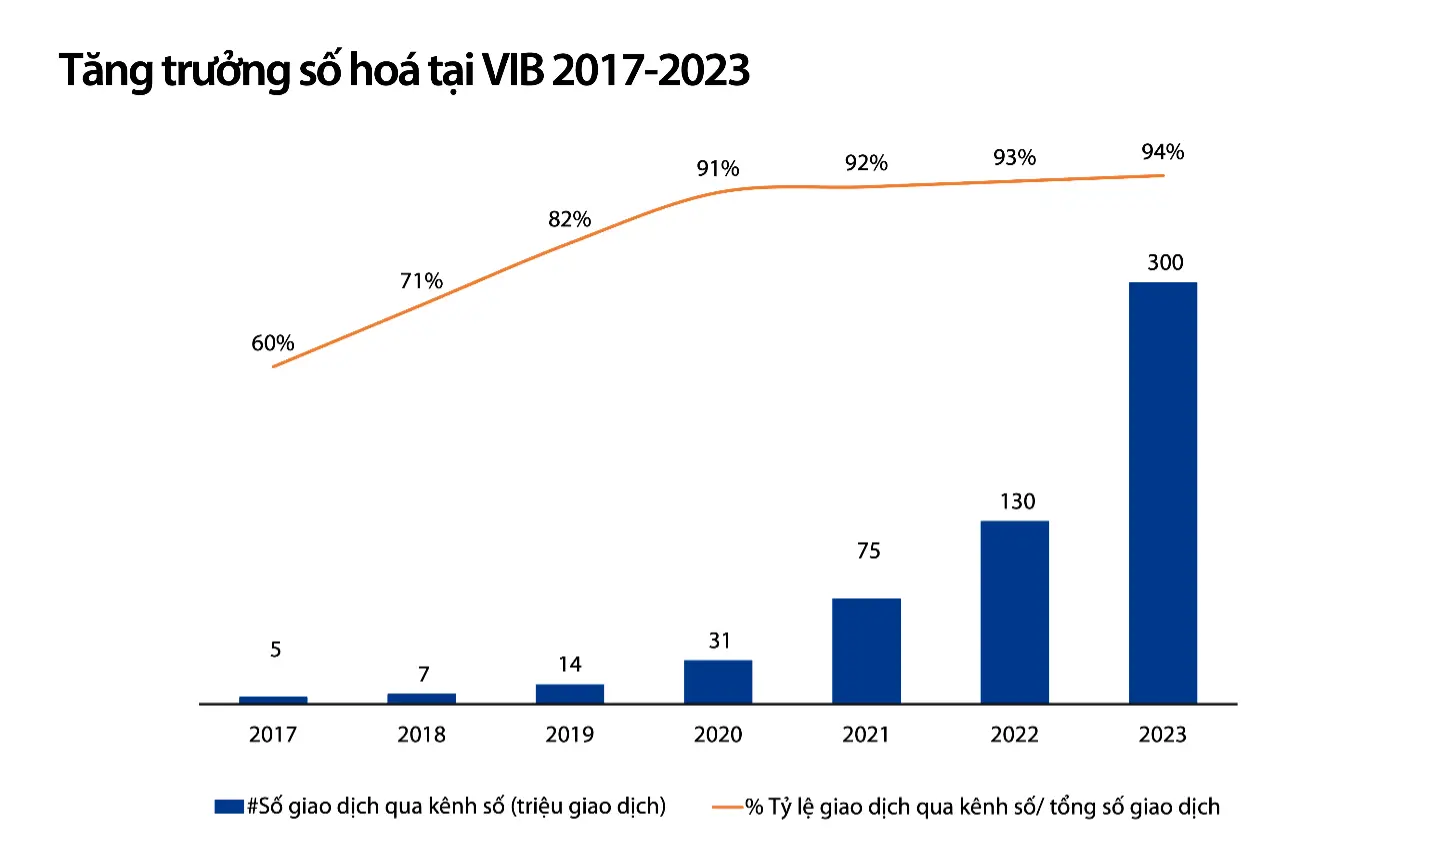 Tăng trưởng số hóa tại VIB 2017-2023